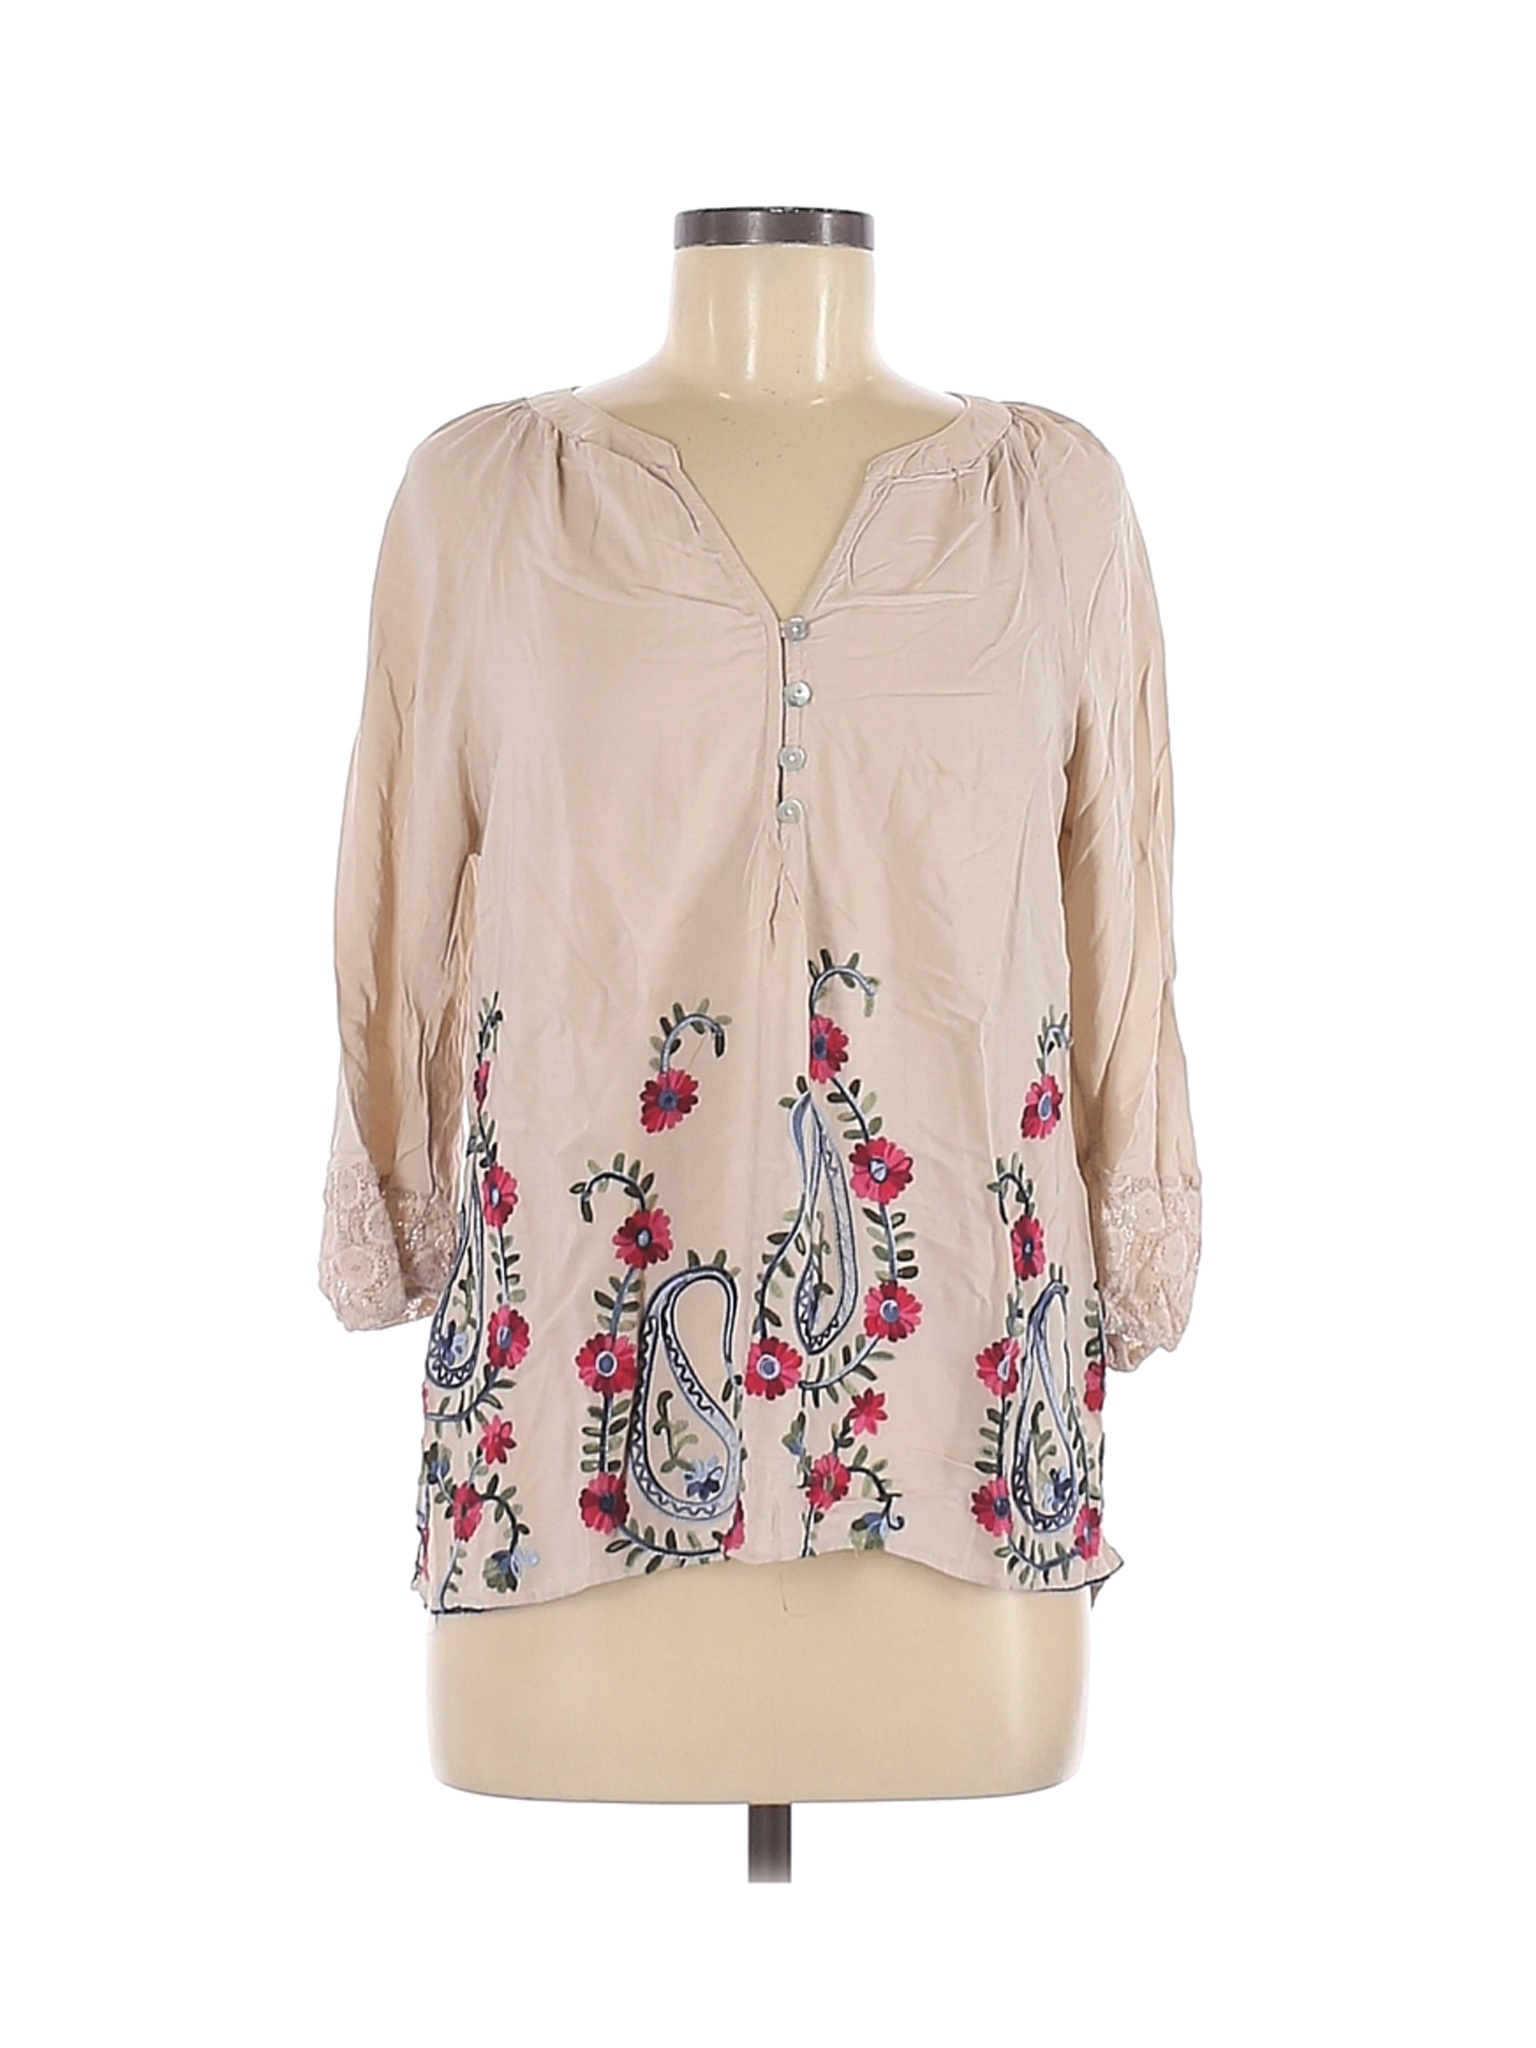 Figueroa & Flower Women Brown Long Sleeve Blouse M | eBay